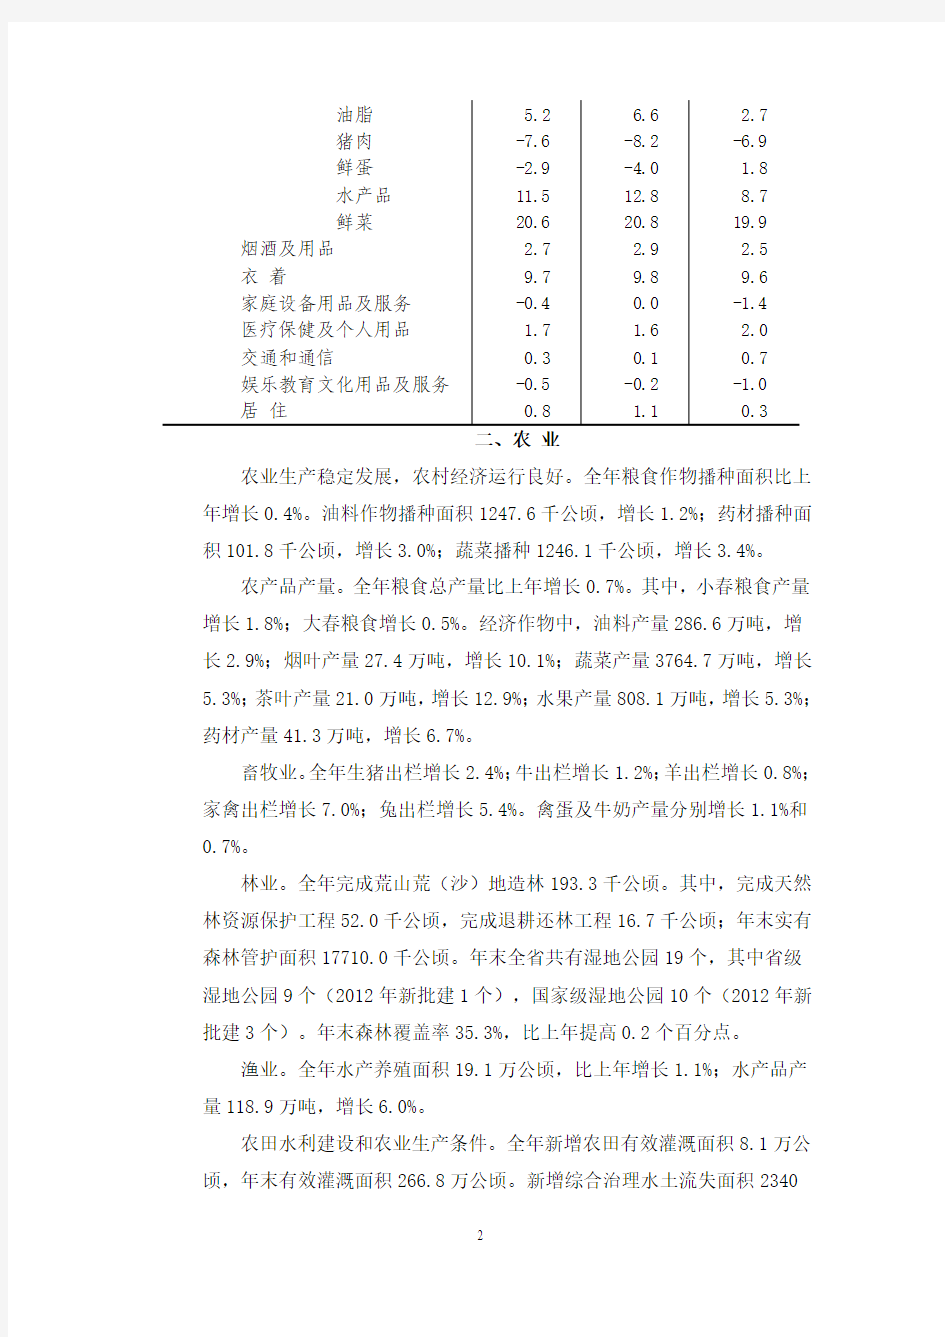 2012年四川国民经济和社会发展的统计公报